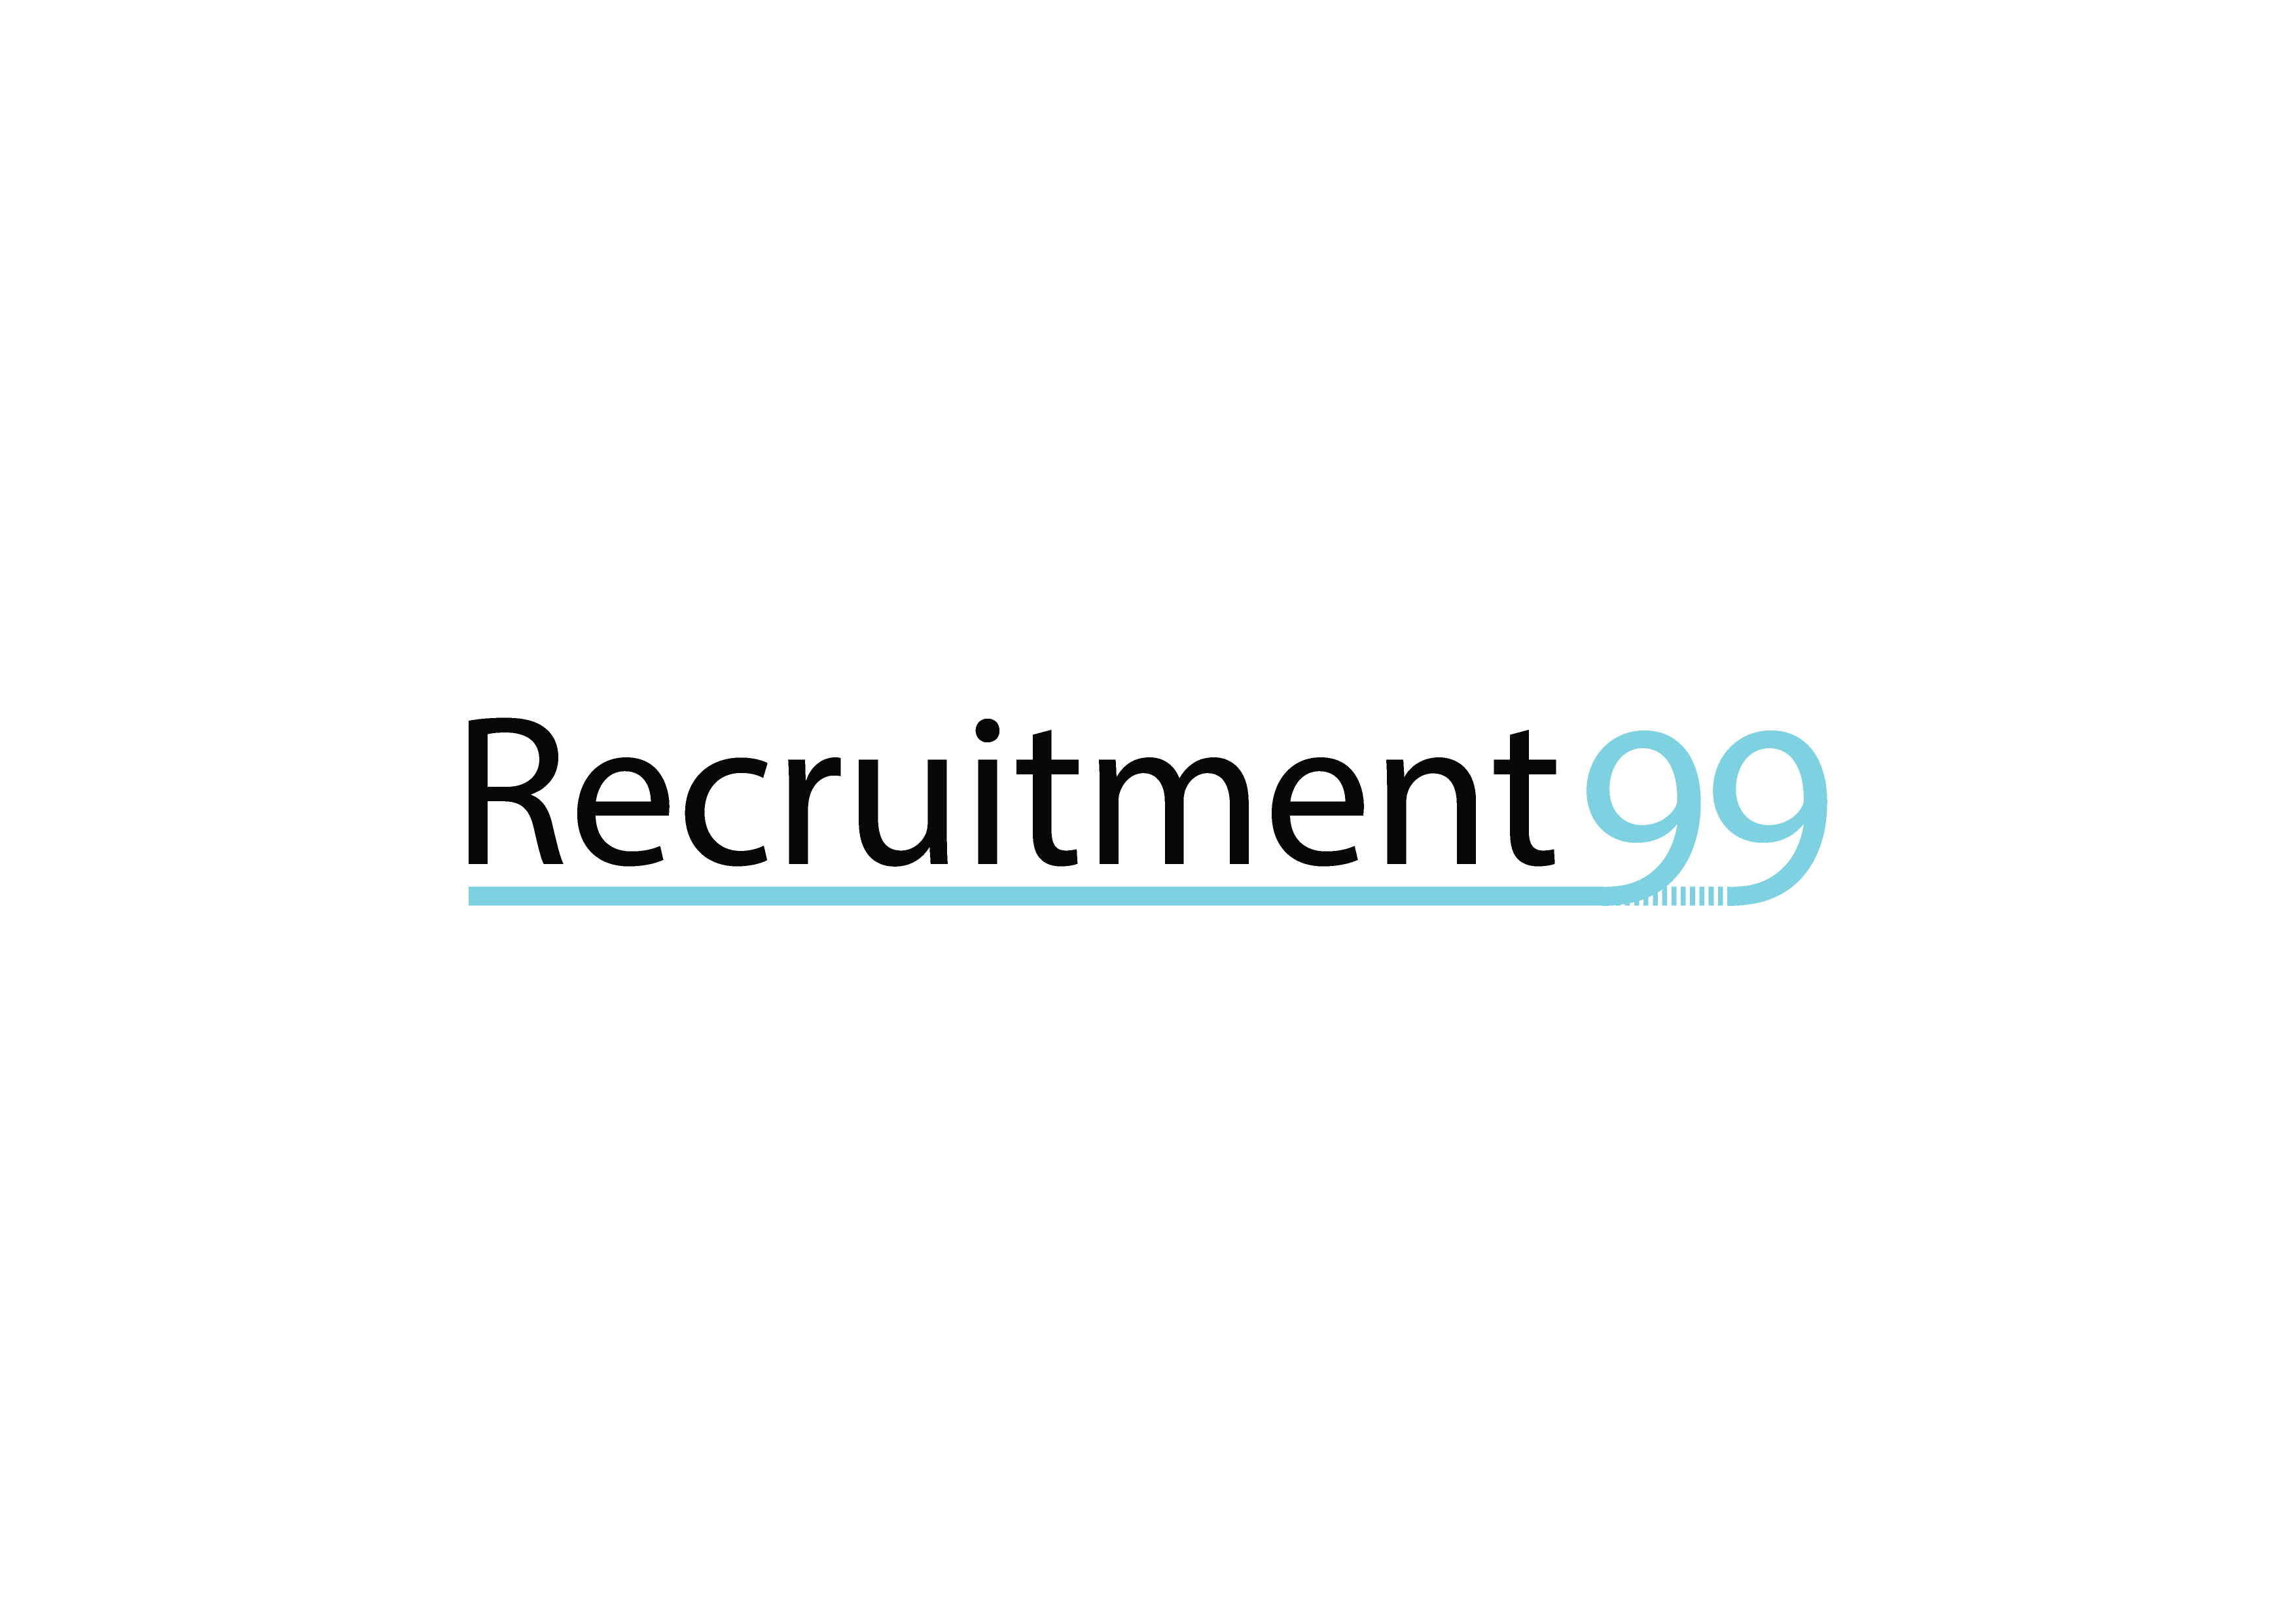 Recruitment 99